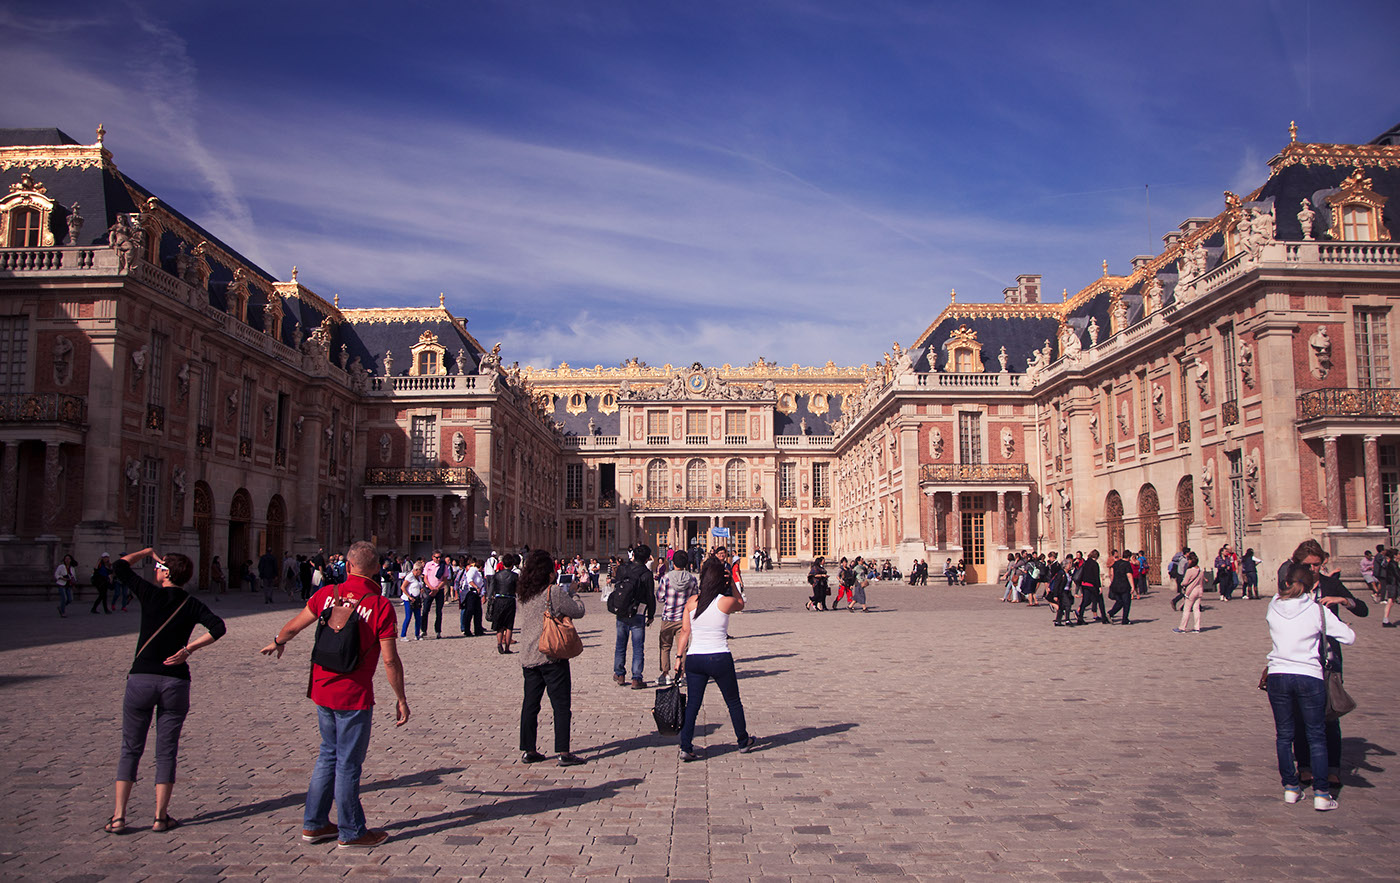 versailles Paris sofia hassan reportage france Nikon Travel garden palace chateau people